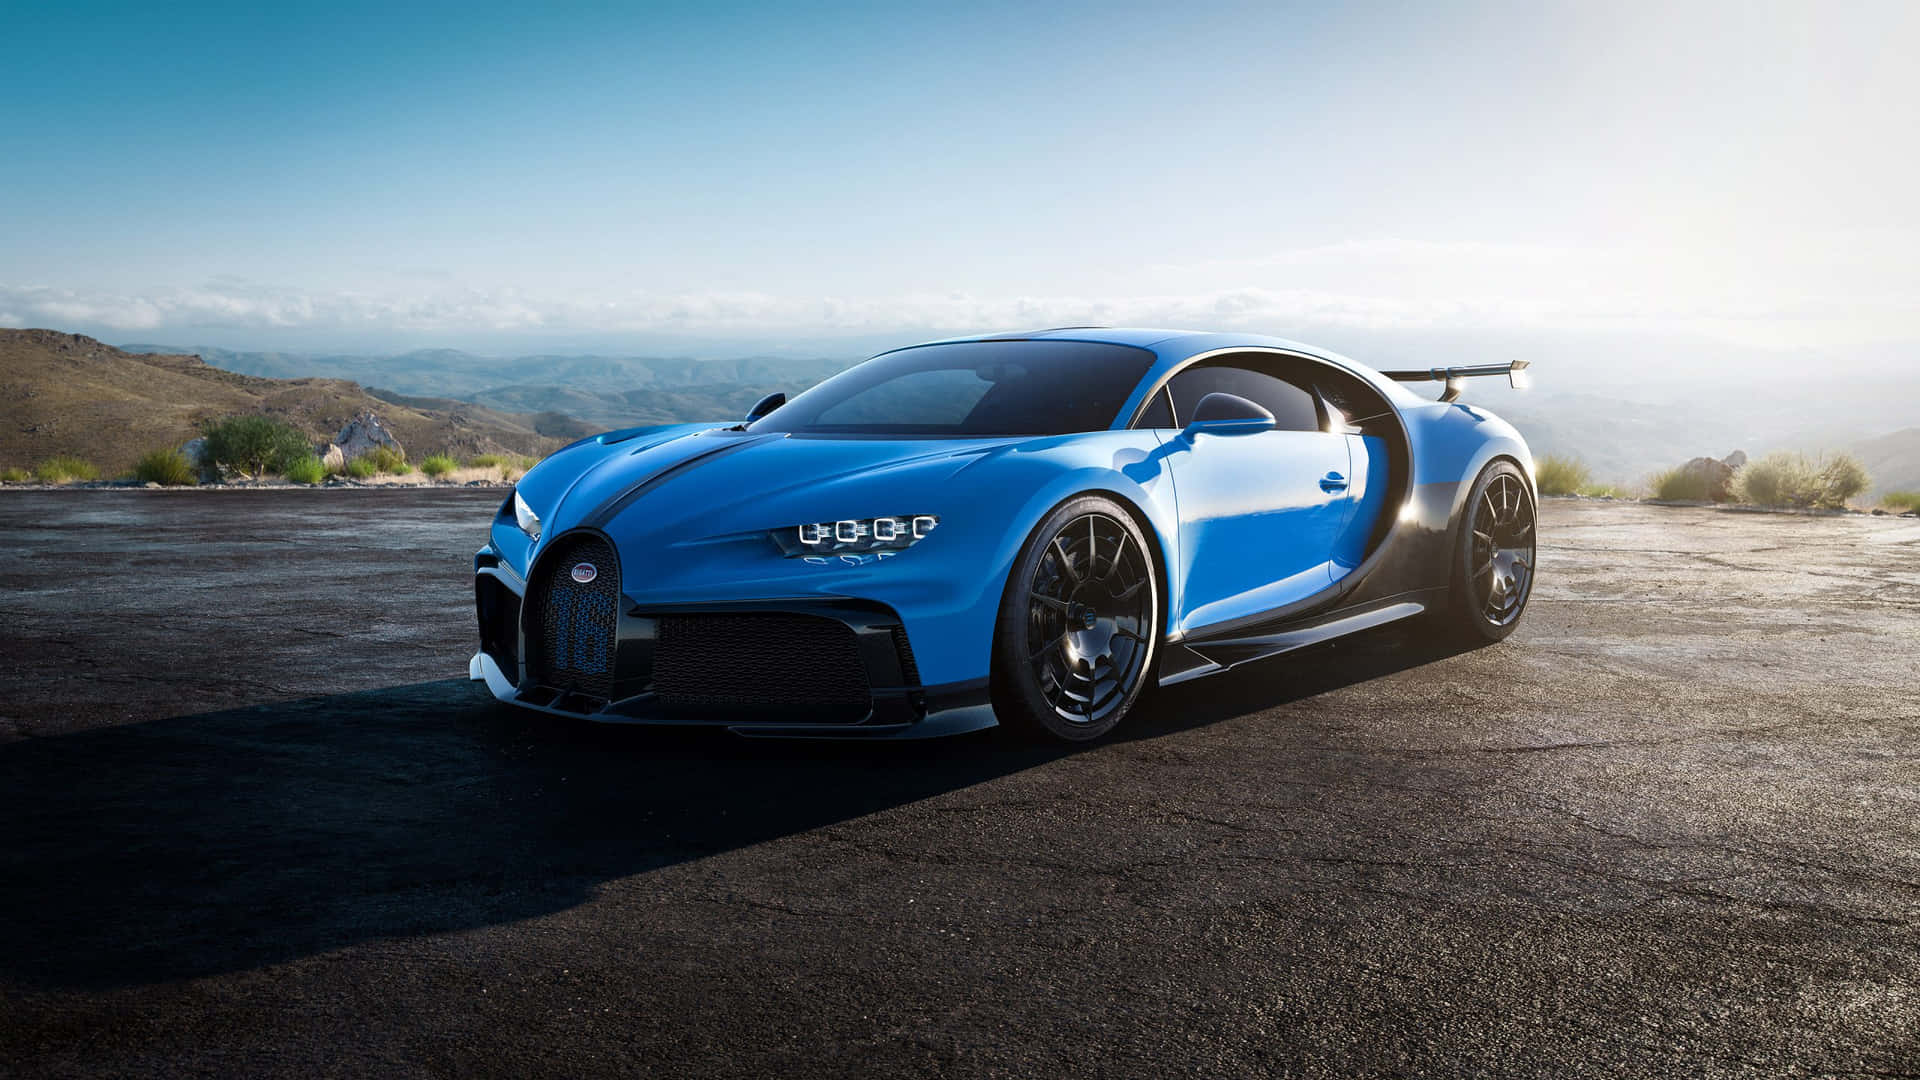 "A glimpse of luxury: Bugatti Car" Wallpaper